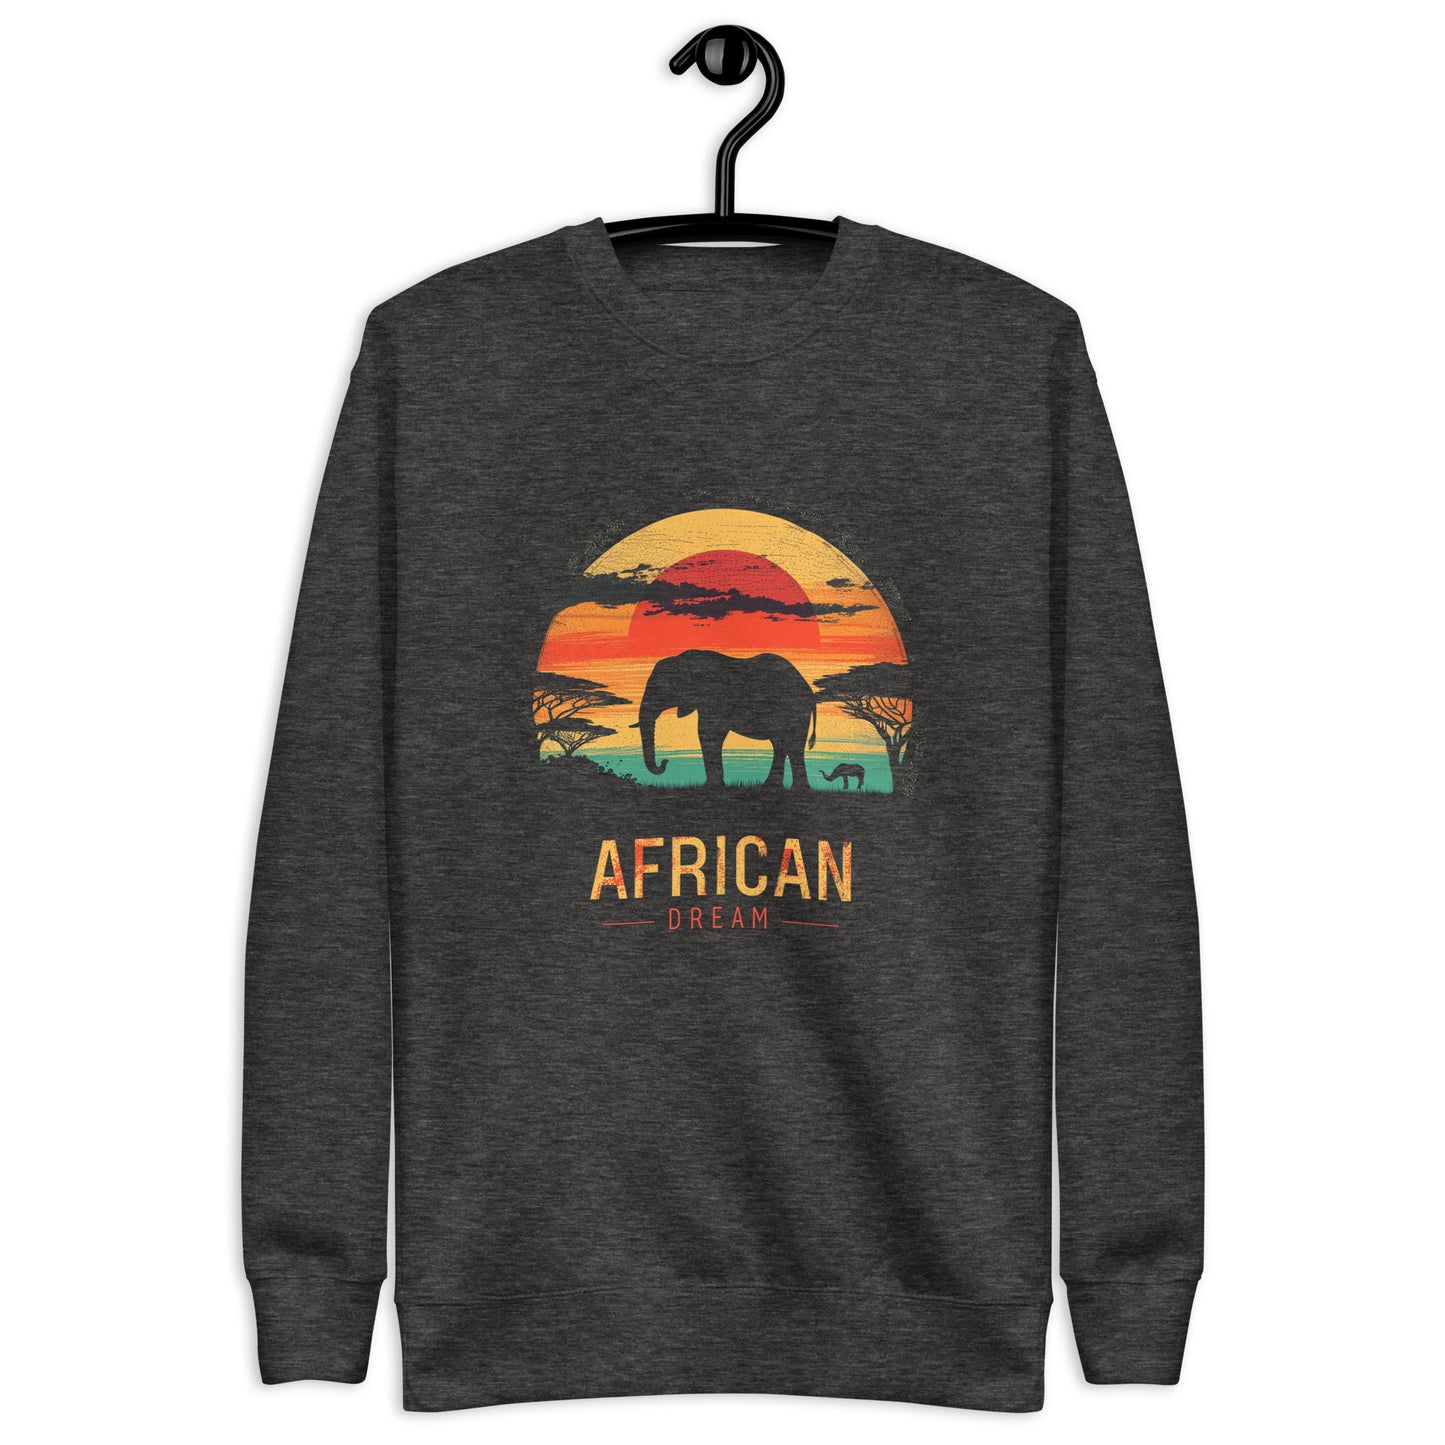 African Dream - Unisex Premium Sweatshirt